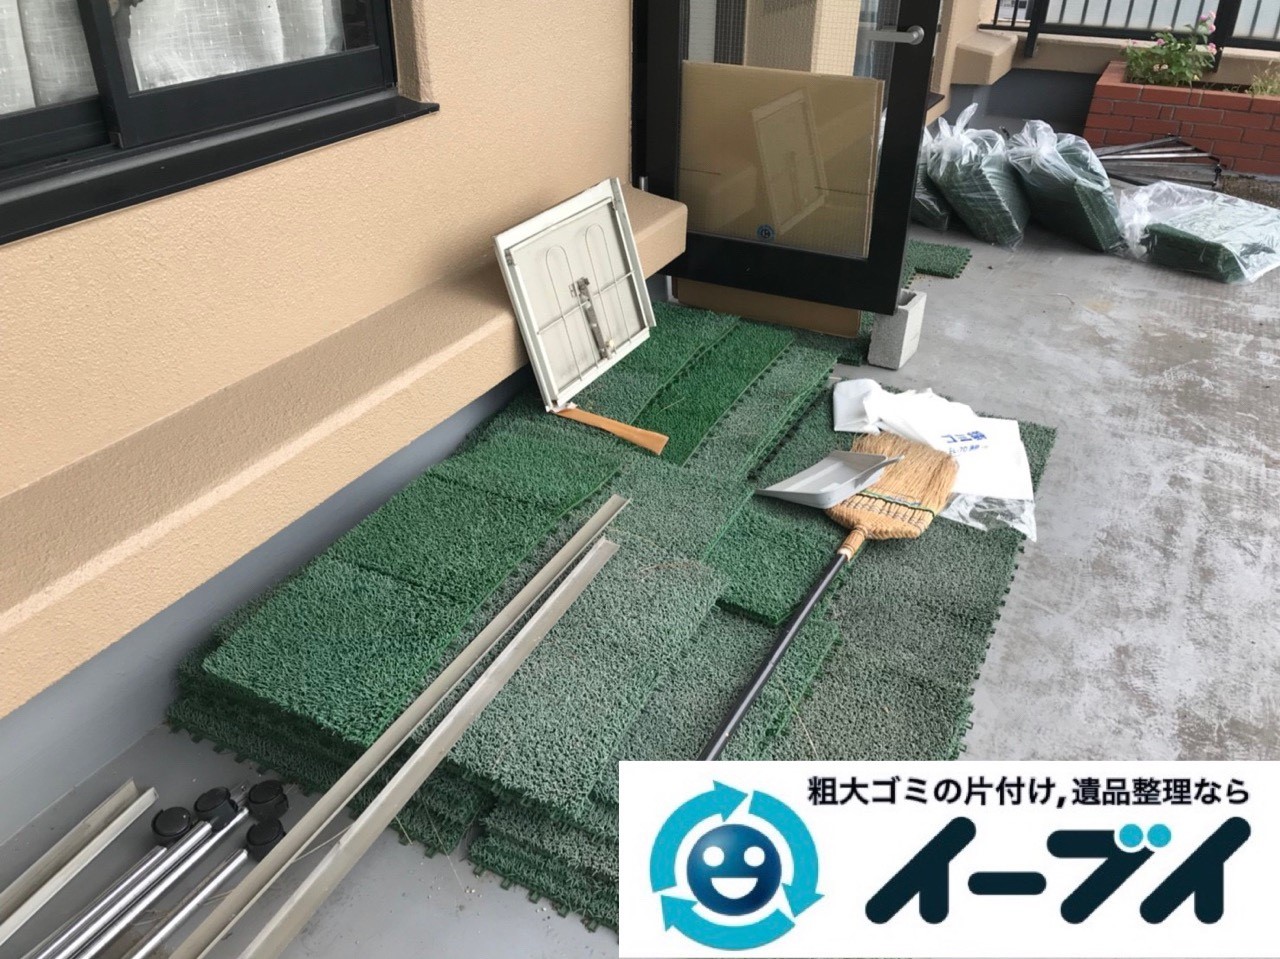 2018年12月8日大阪府大阪市住吉区で台風の被害で物が散乱したベランダの片付け。写真2